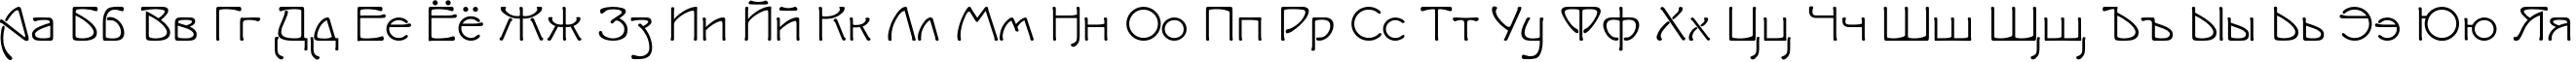 Пример написания русского алфавита шрифтом IsadoraSV TYGRA